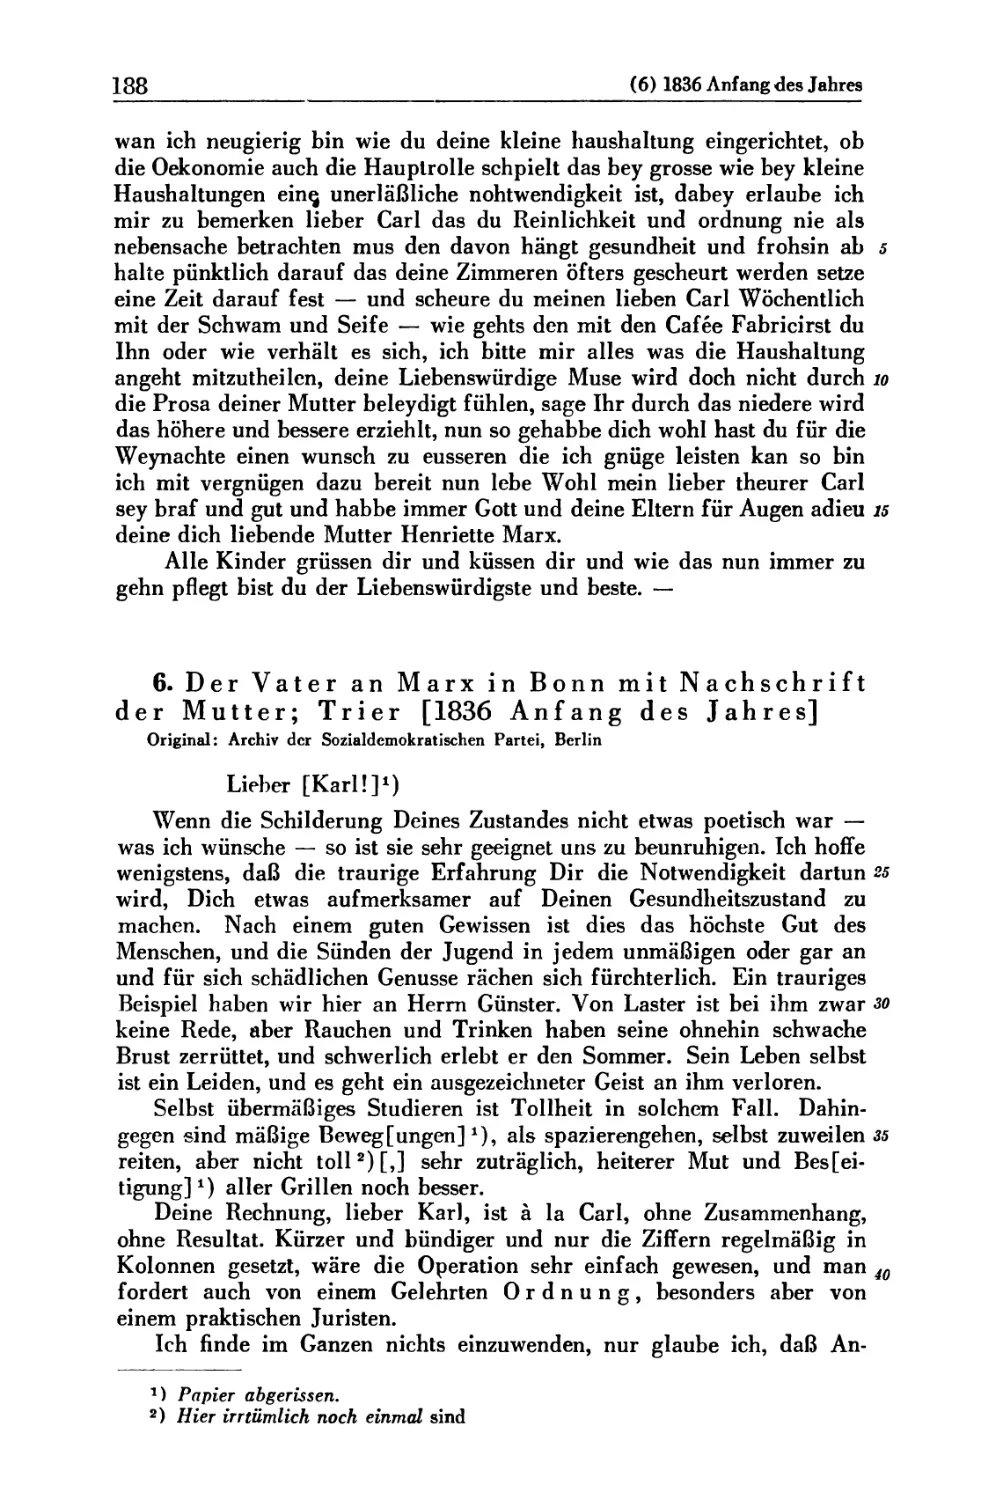 6. Der Vater an Marx in Bonn mit Nachschrift der Mutter; Trier [1836 Anfang des Jahres]